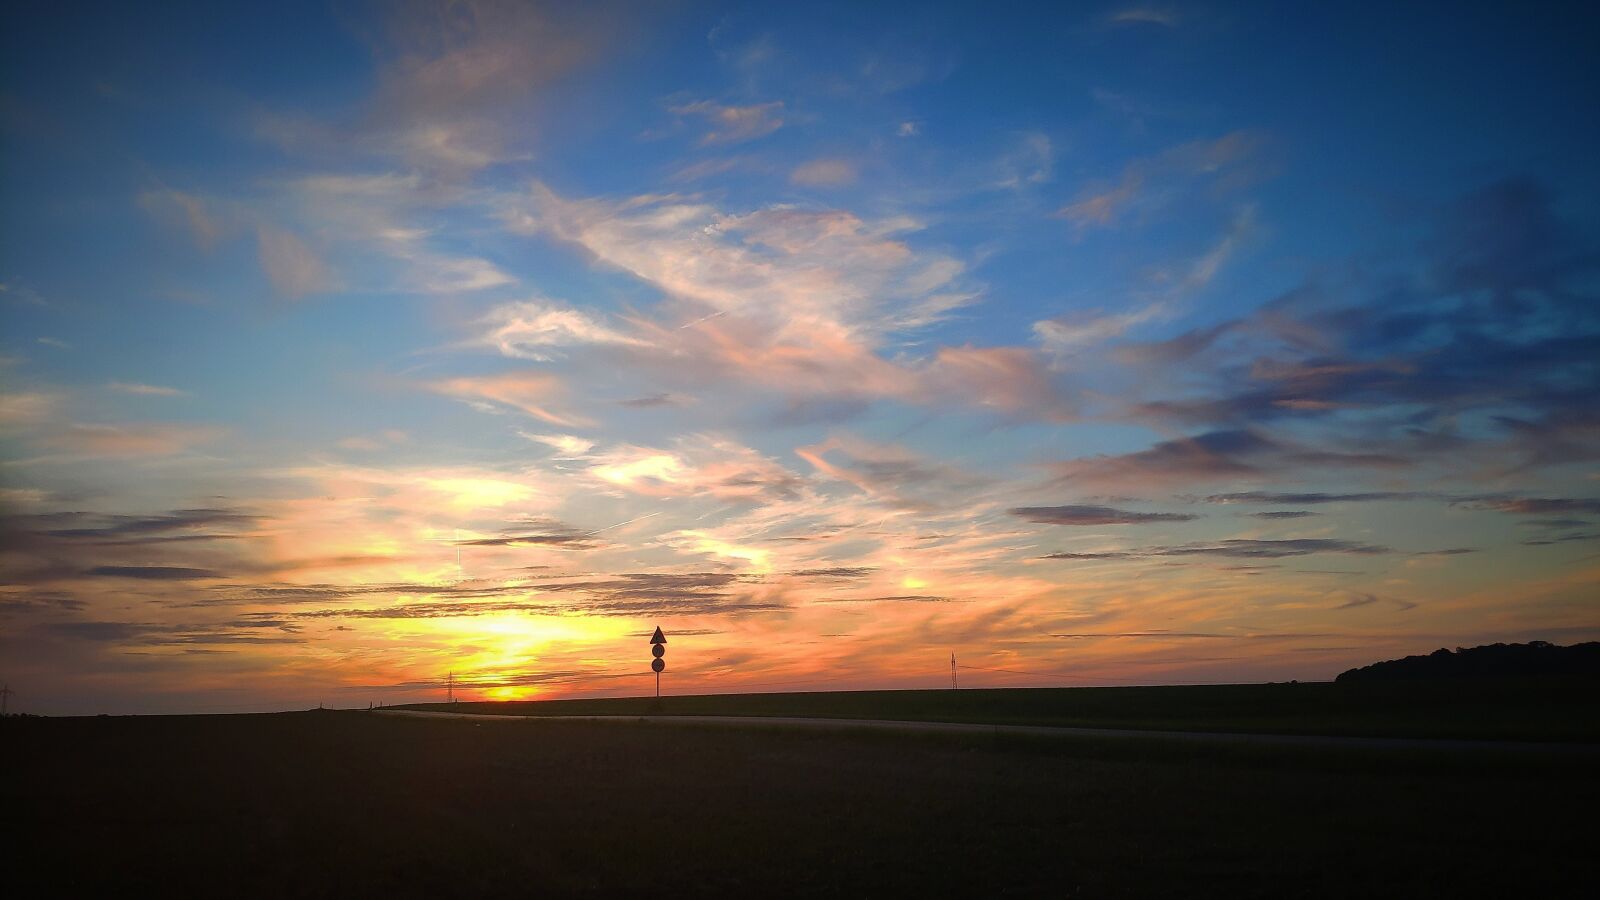 Xiaomi Mi MIX 2S sample photo. Sunset, clouds, nature photography